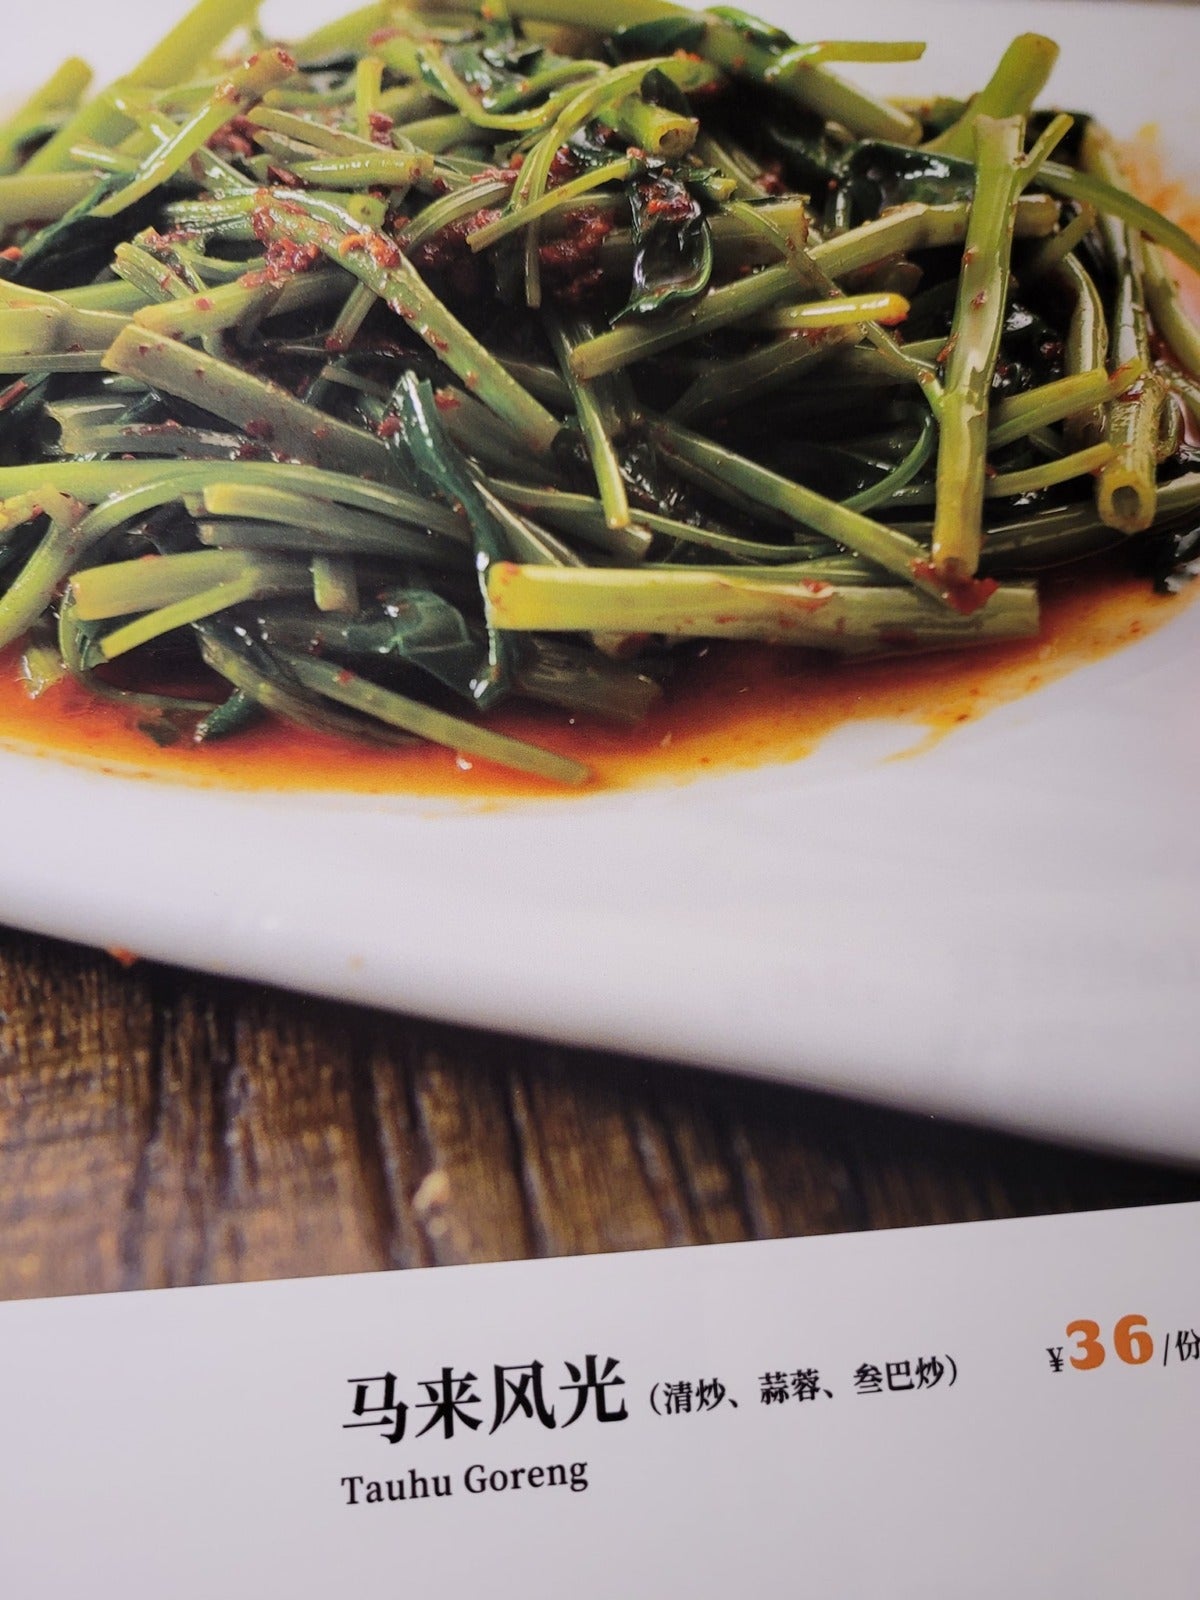 Restaurant In China Typo Translation 5